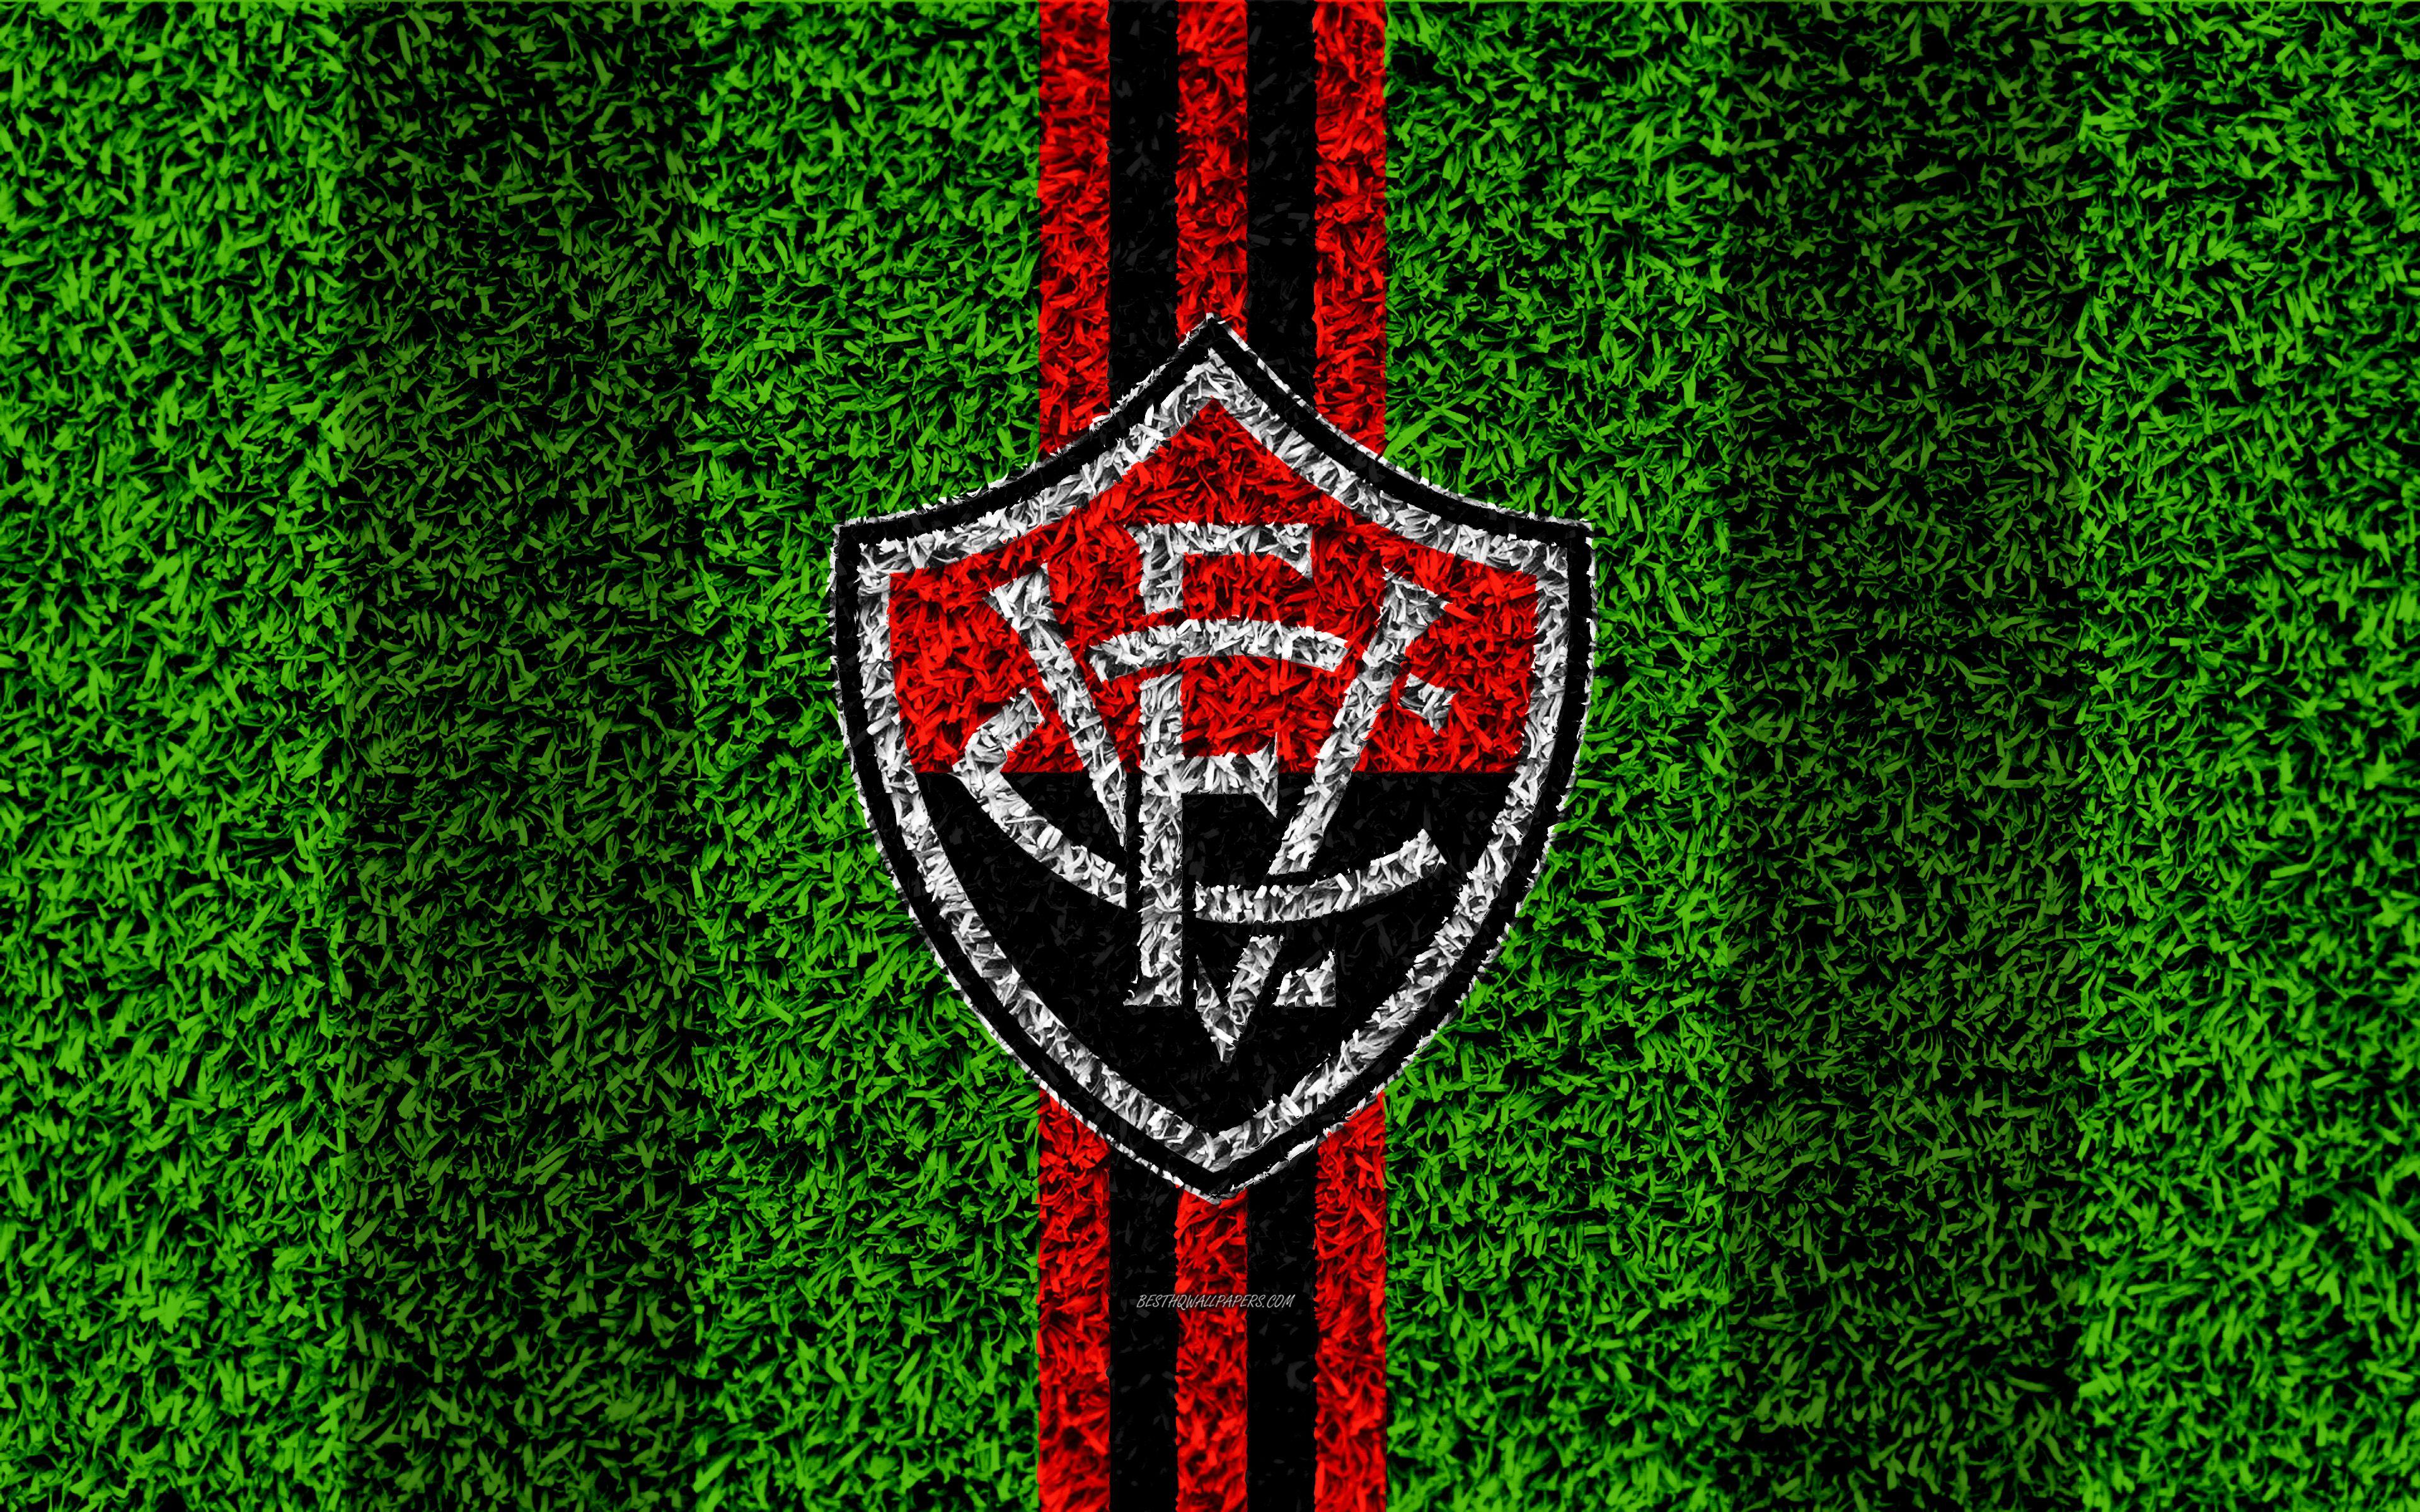 Download wallpaper Vitoria FC, Esporte Clube Vitoria, 4k, football